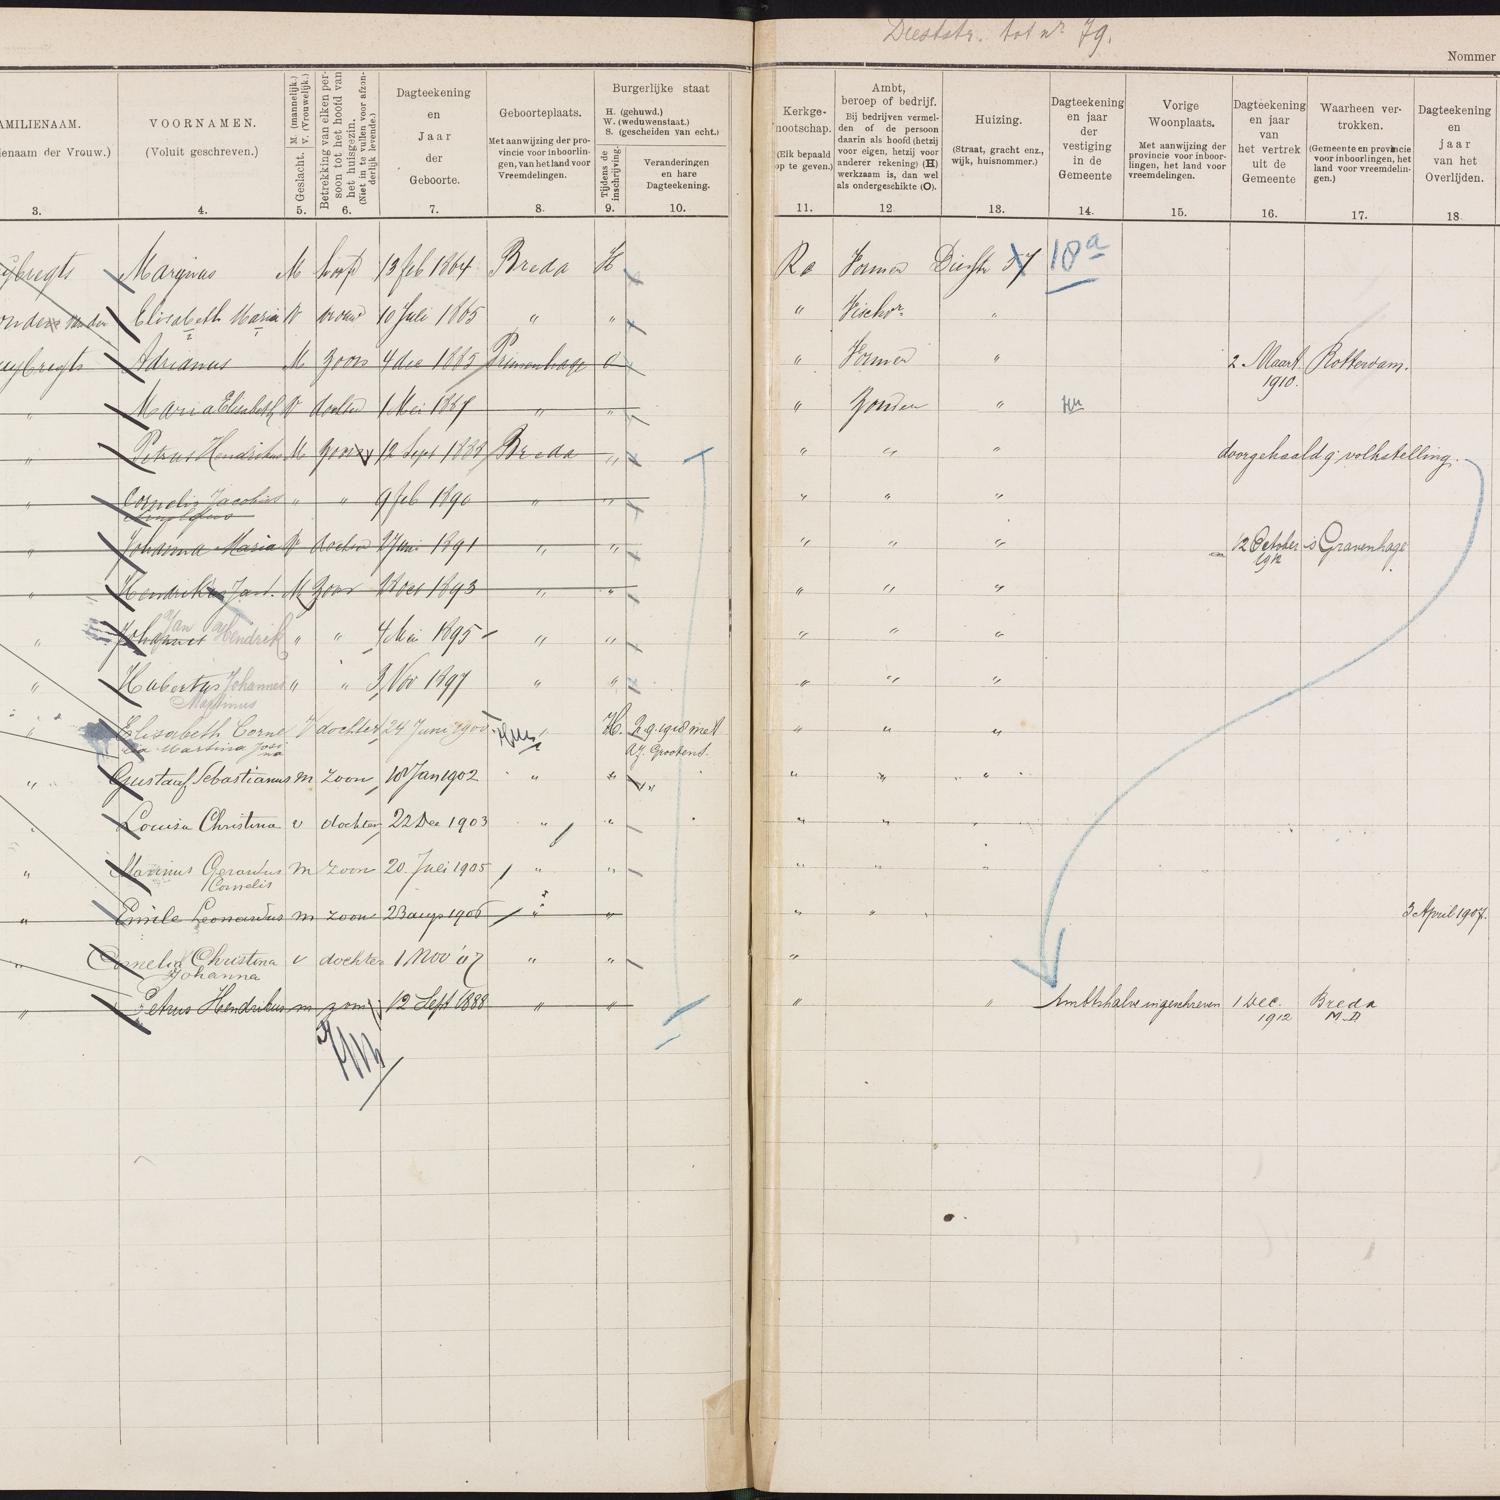 Population registry, Breda, 1900-1920, part 05, sheet 161